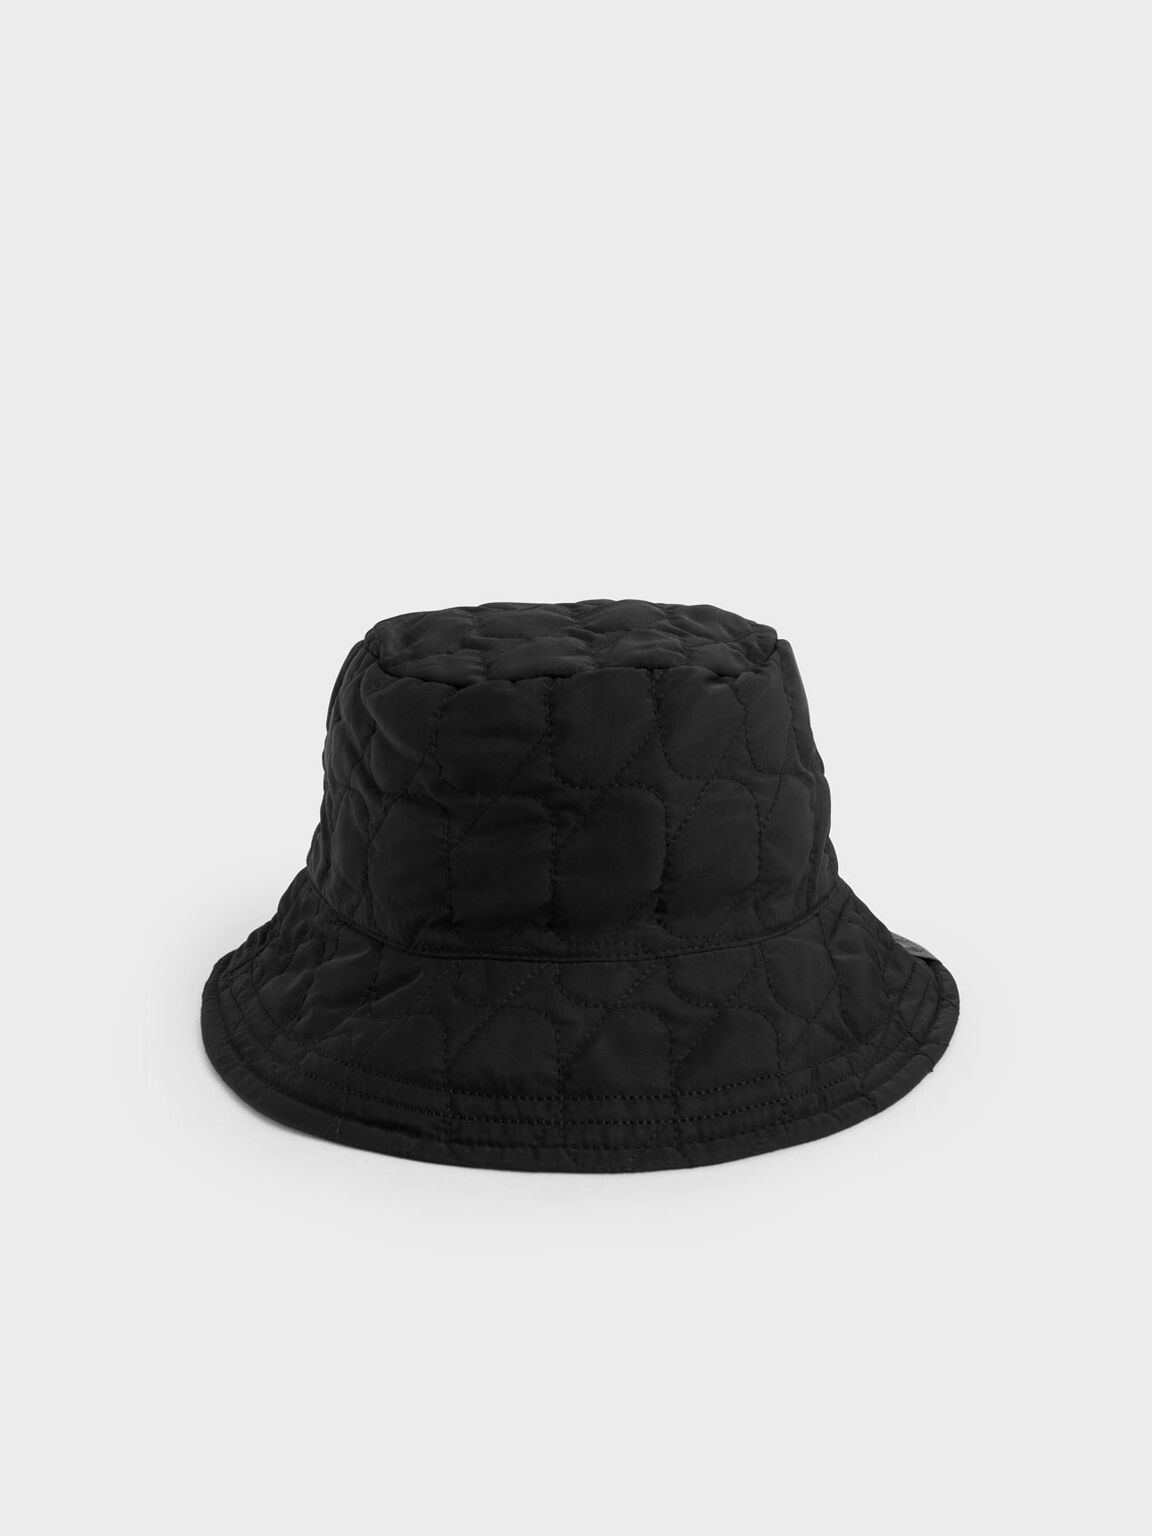 澎澎衍縫漁夫帽, 黑色, hi-res